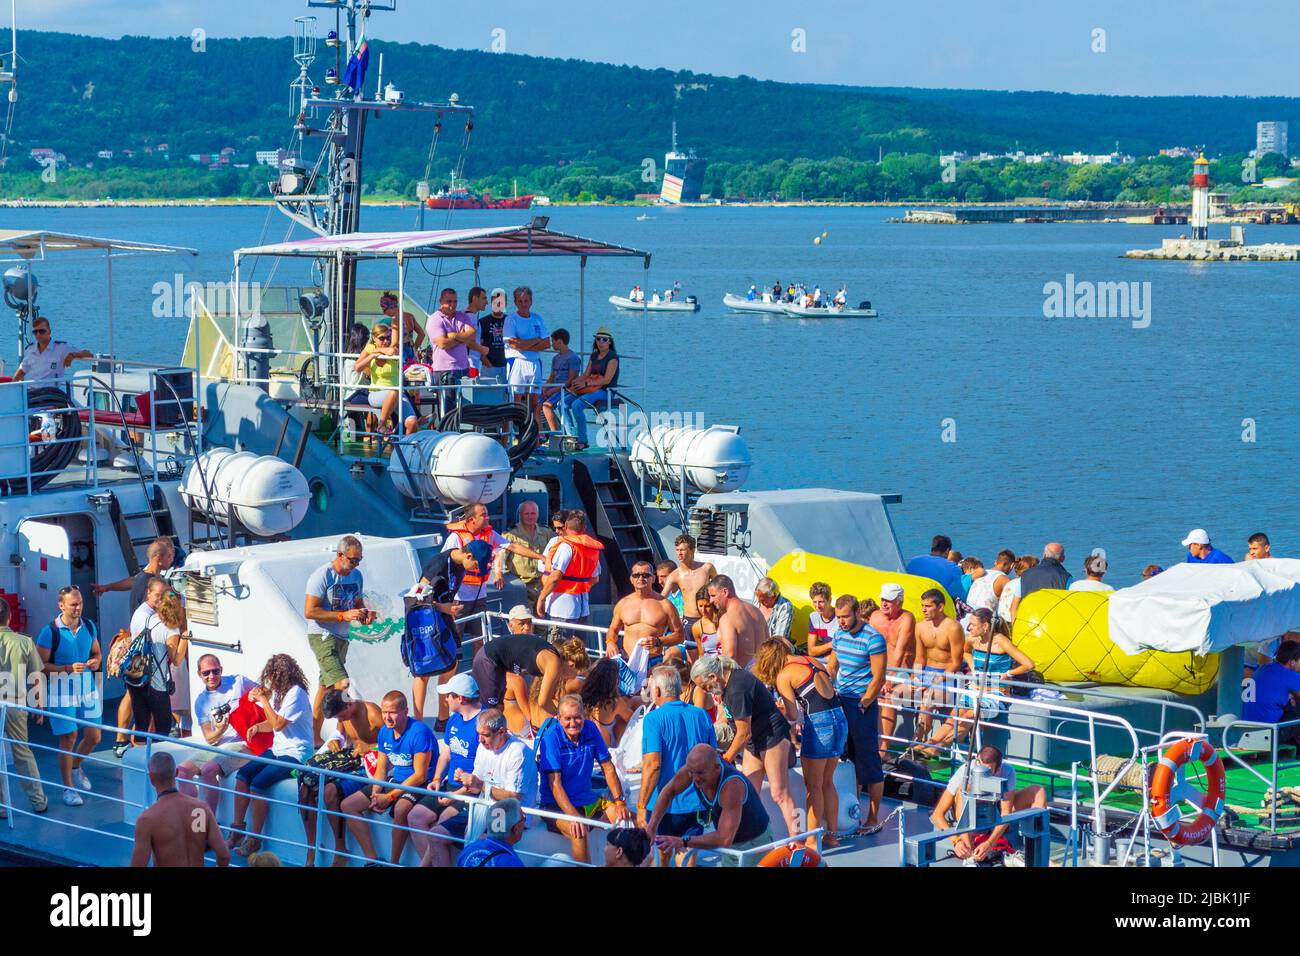 Am 2. August 2015 wurde 75. Jahrestag Schwimmen Marathon Galata - Varna statt. Es waren 263 Teilnehmer.der Treffpunkt für die Teilnehmer Stockfoto